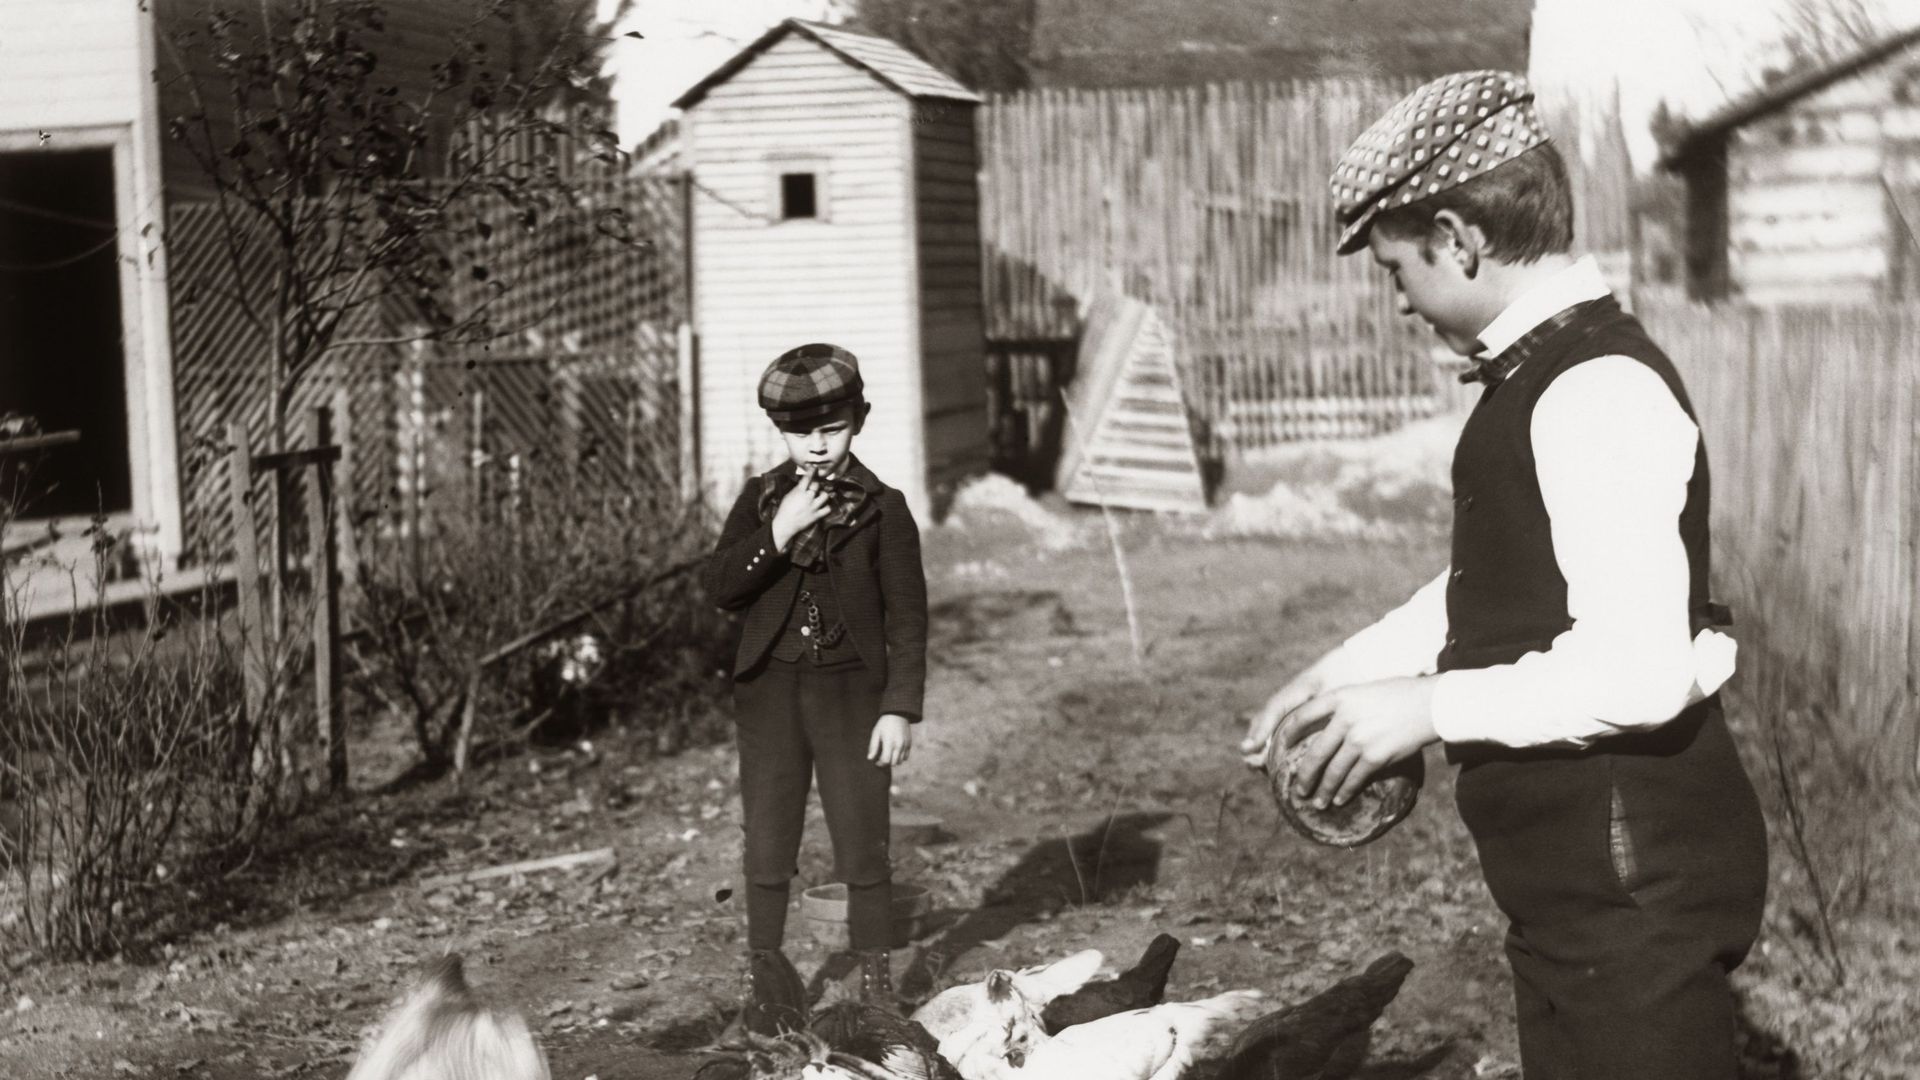 Image d'illustration : deux enfants dans une ferme vers 1890